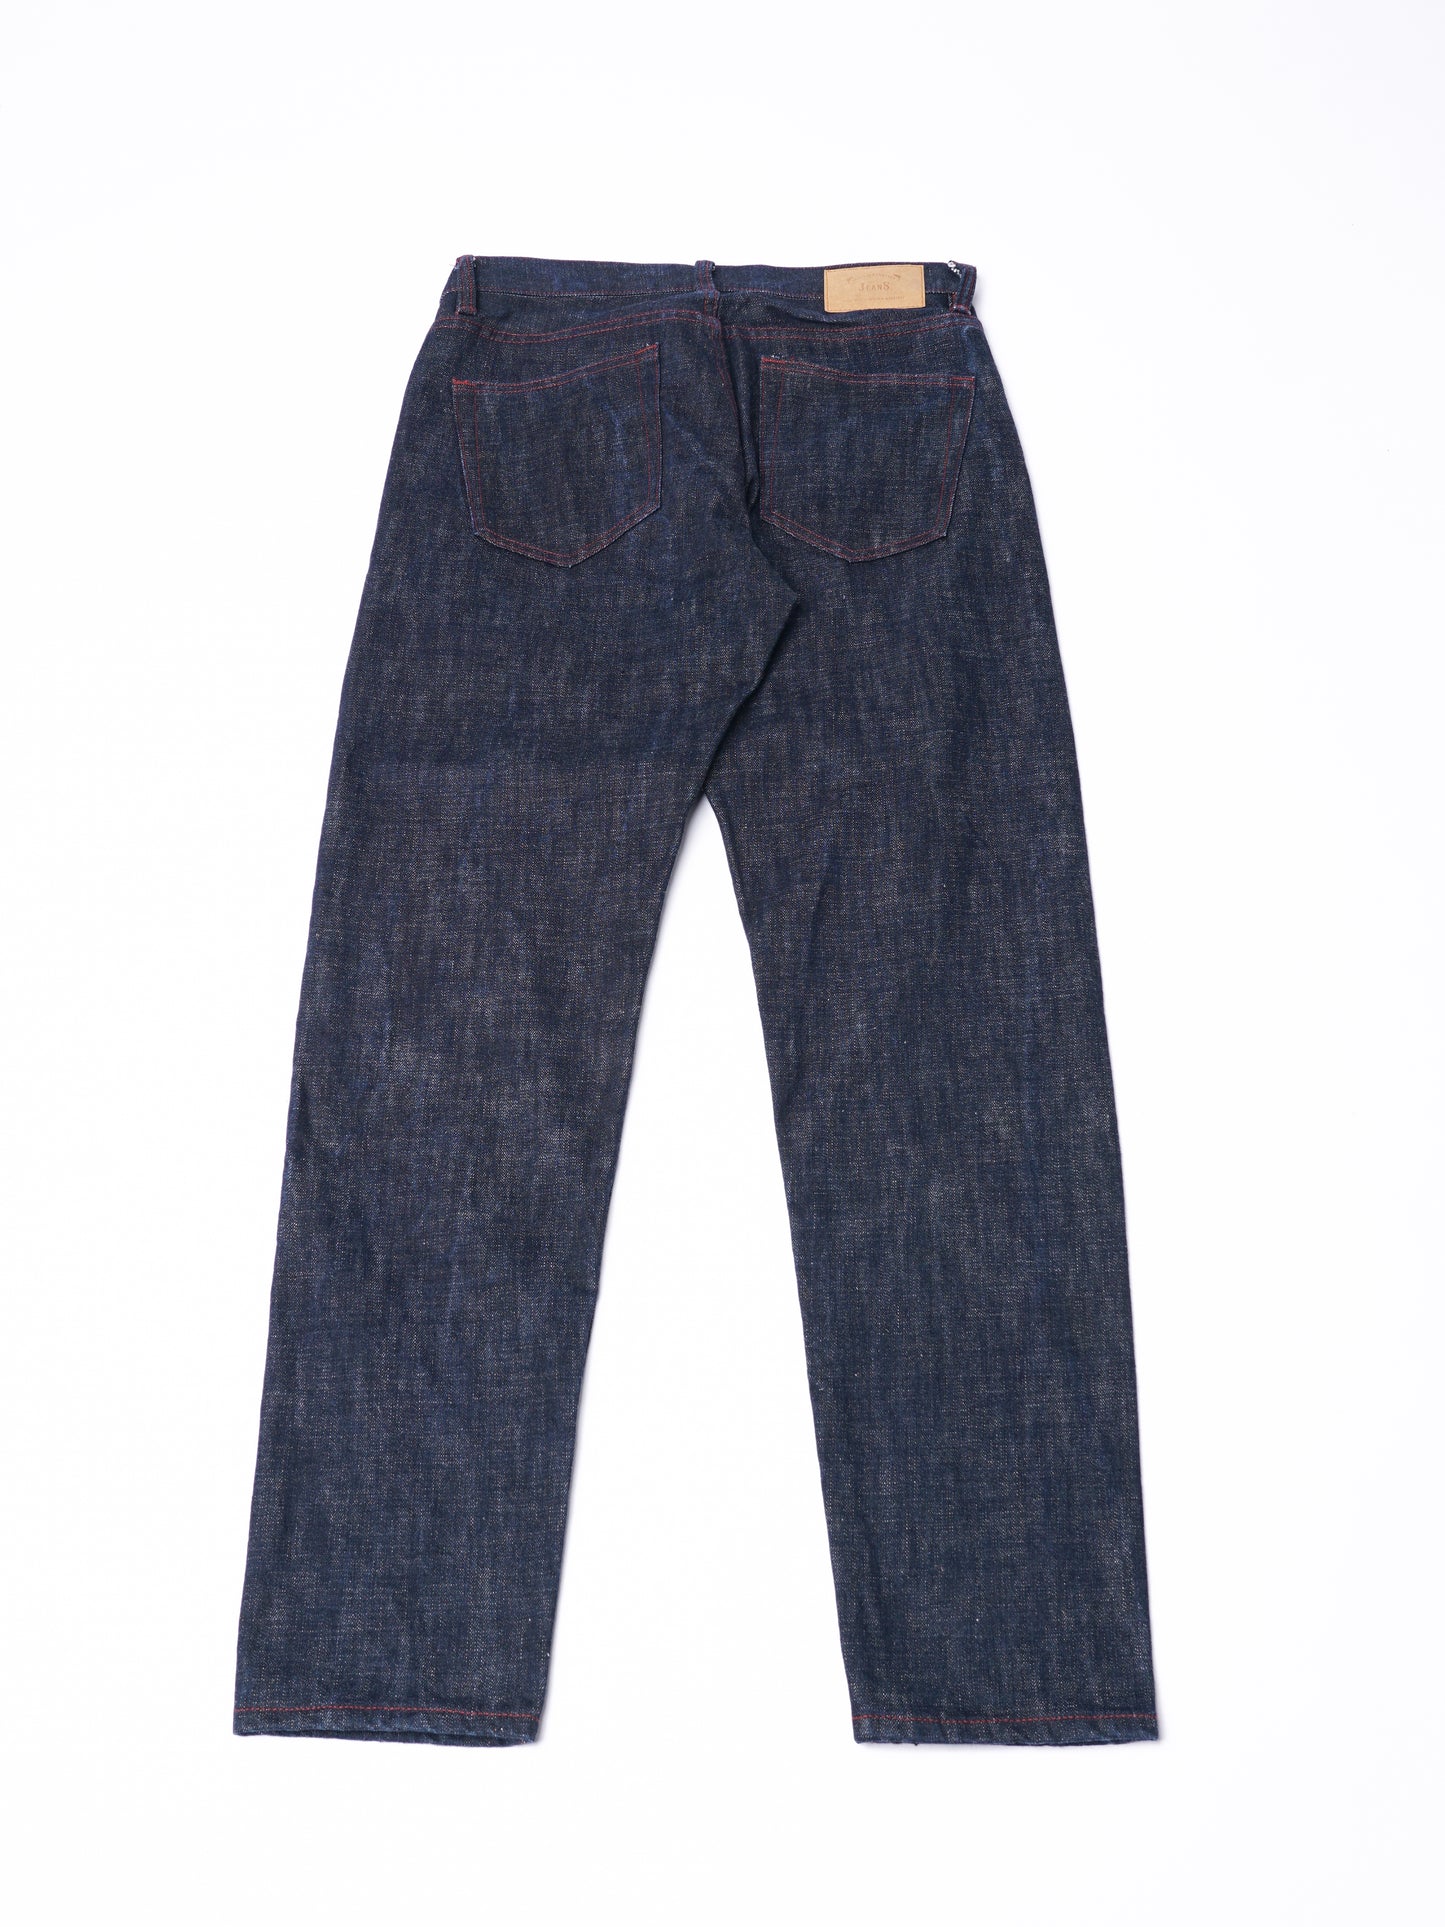 【訂製】H291 18oz. Kaihara Denim Straight Cut Jeans